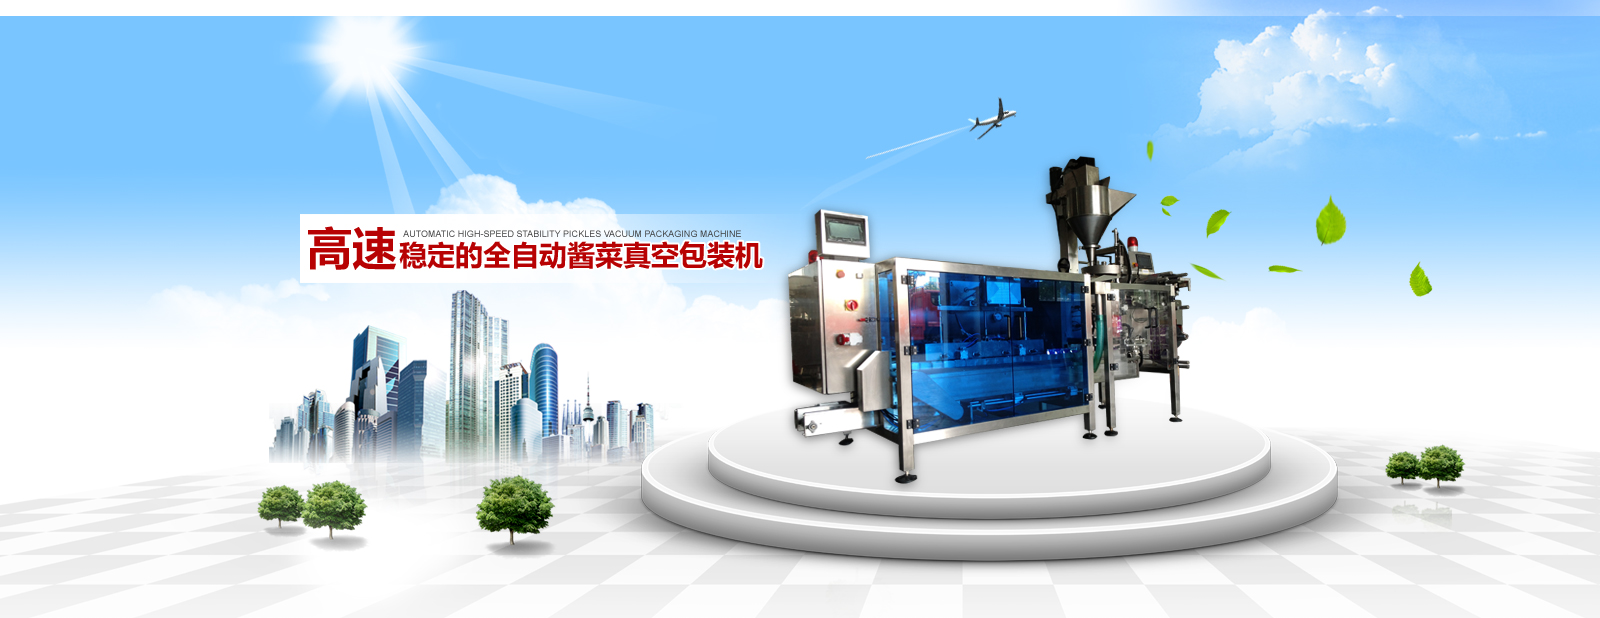 深圳市紫光自动化装备有限公司
